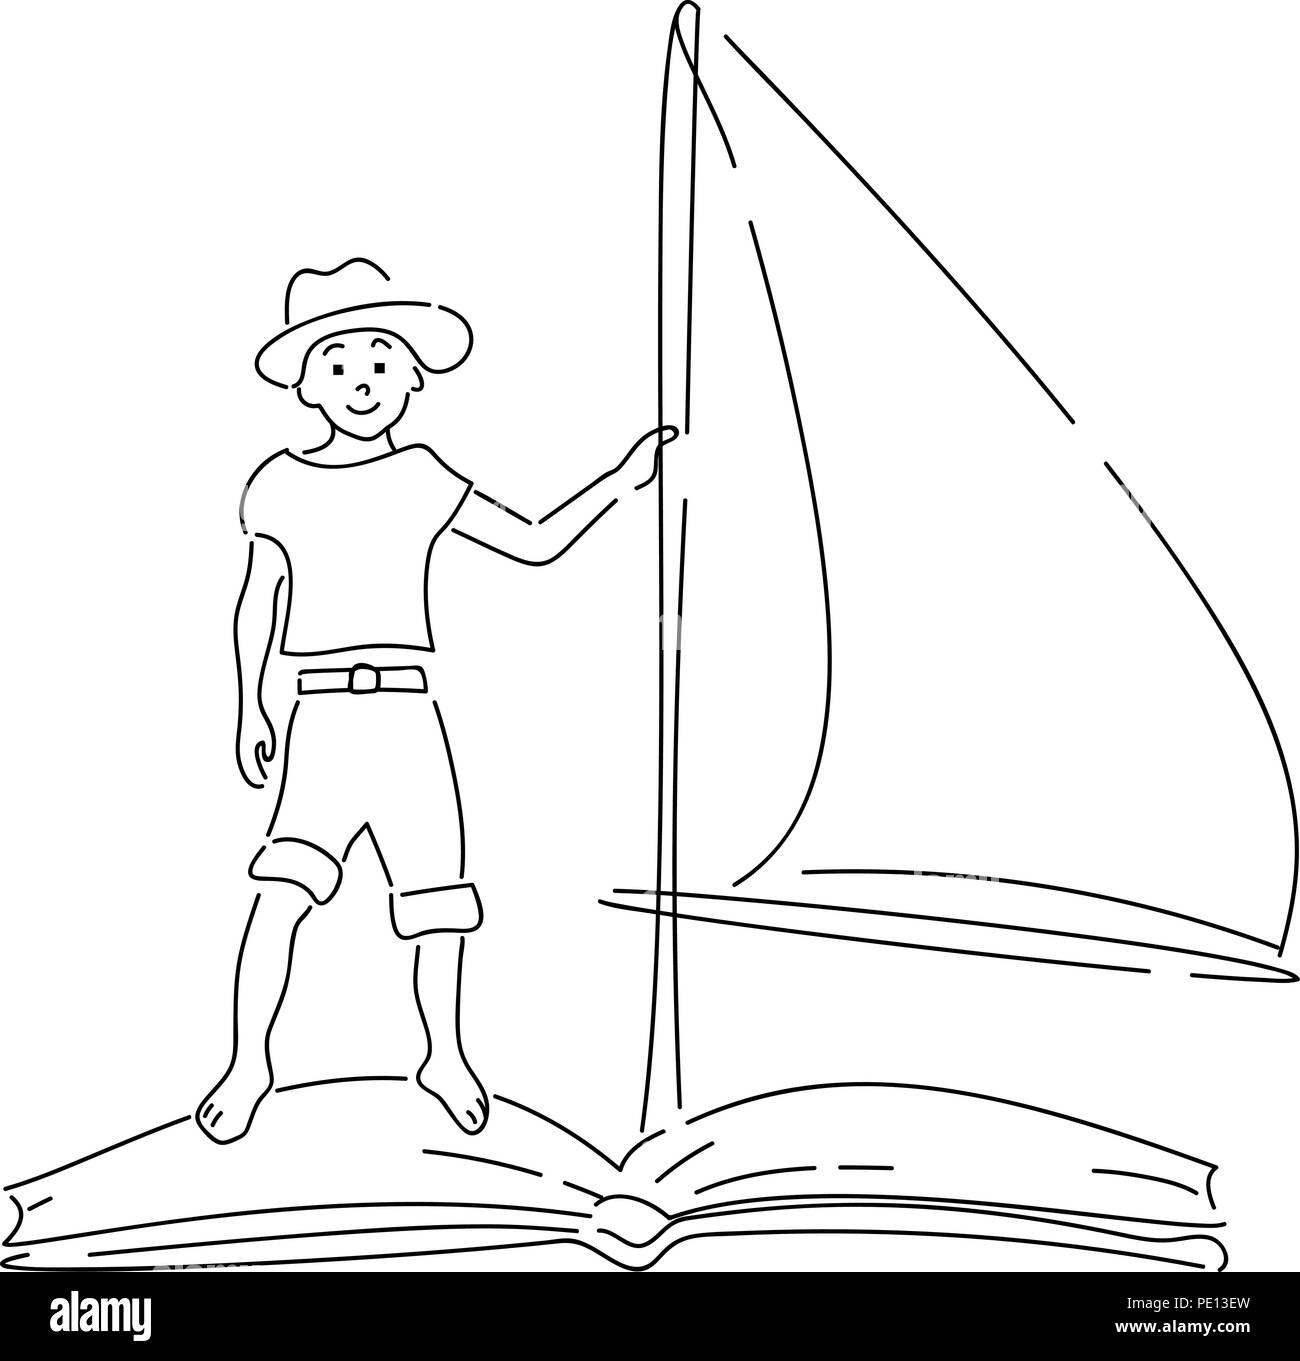 Junge schwimmend auf Buch mit Segeln. Hand Stil doodle Design gezeichnet. Vector Illustration Stock Vektor